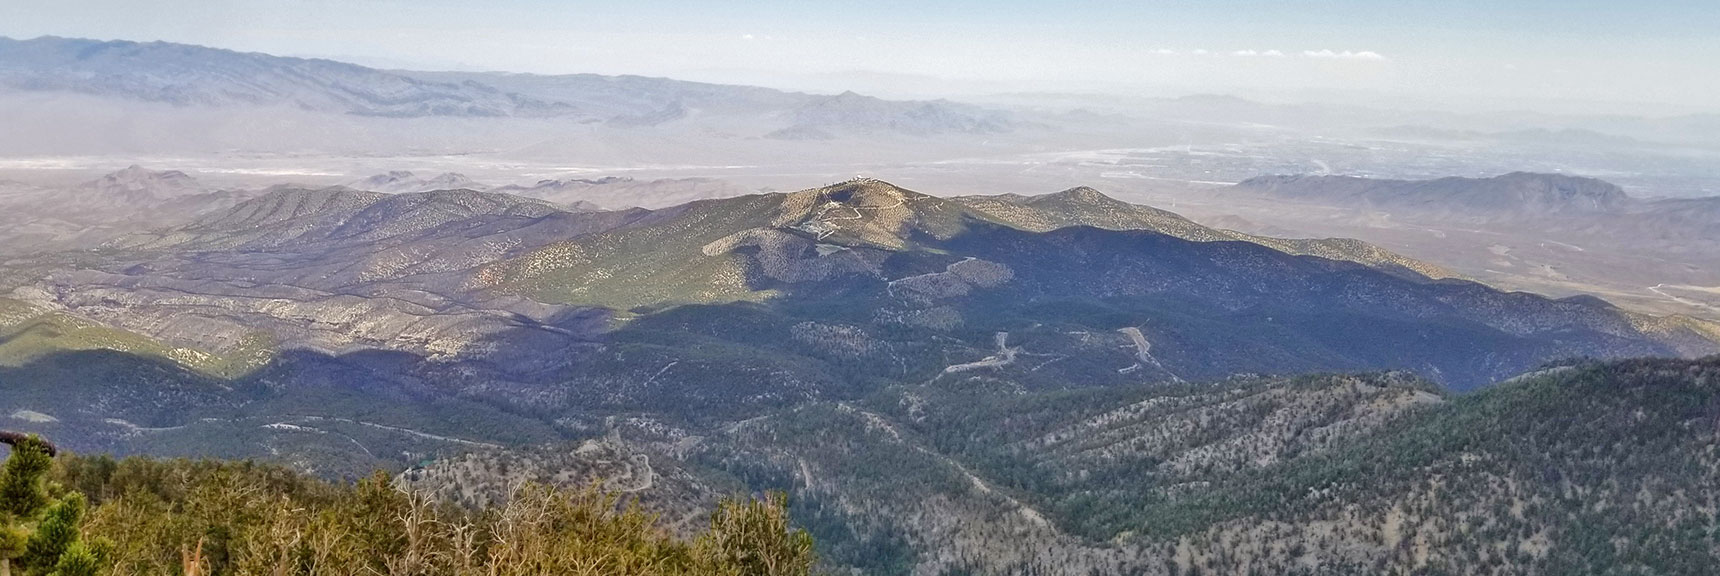 Centennial Hills, Gass Peak and Sheep Range from Mummy Mountain's Northeastern Cliffs | Mummy Mountain NNE, Mt. Charleston Wilderness, Nevada, Slide 029